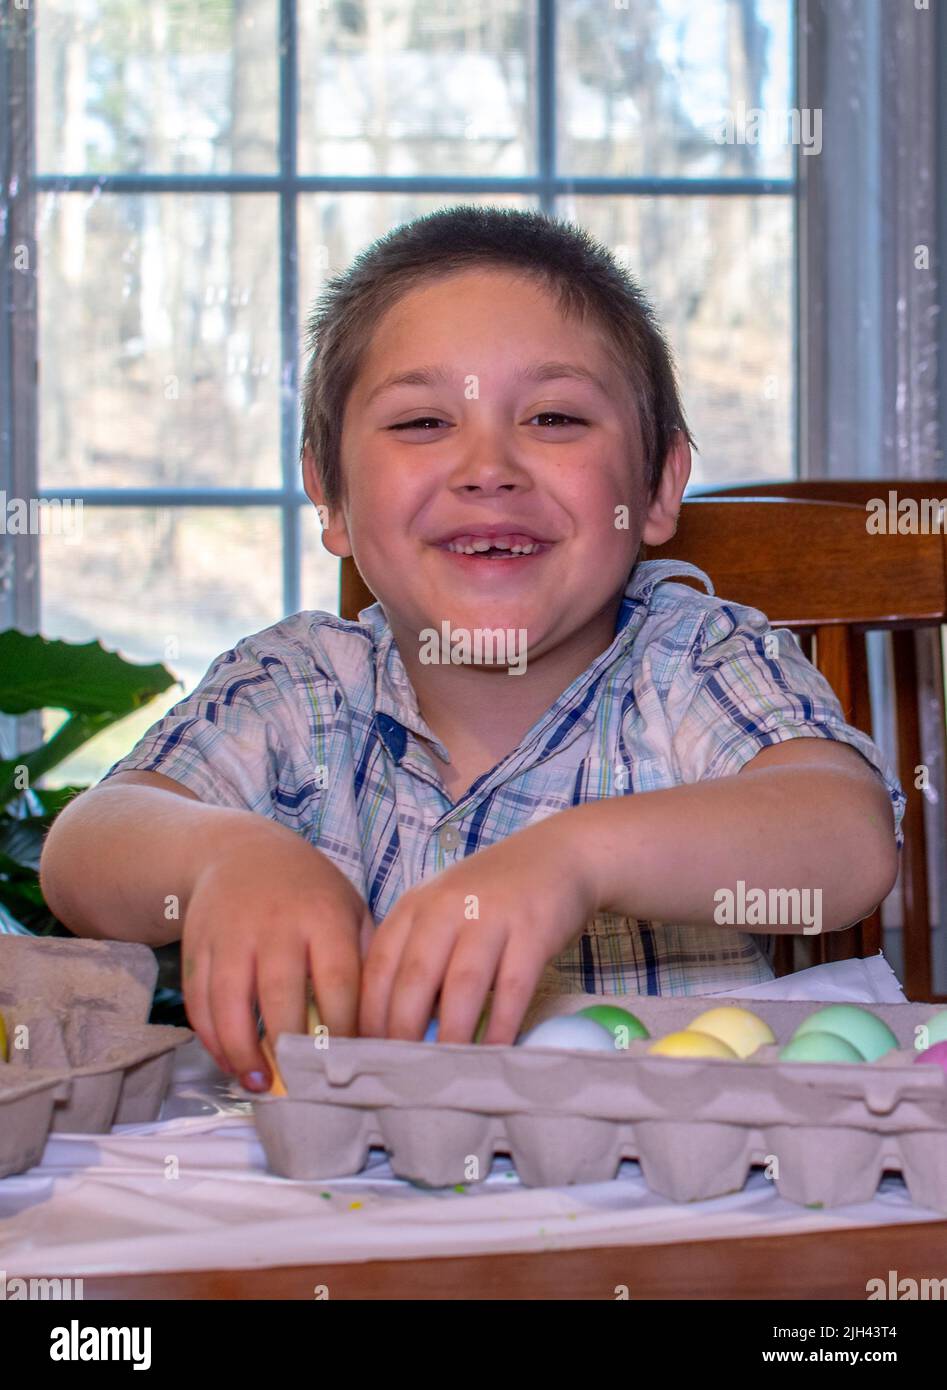 il ragazzo sorridente mostra con orgoglio le sue colorate uova di pasqua che ha appena tinto Foto Stock